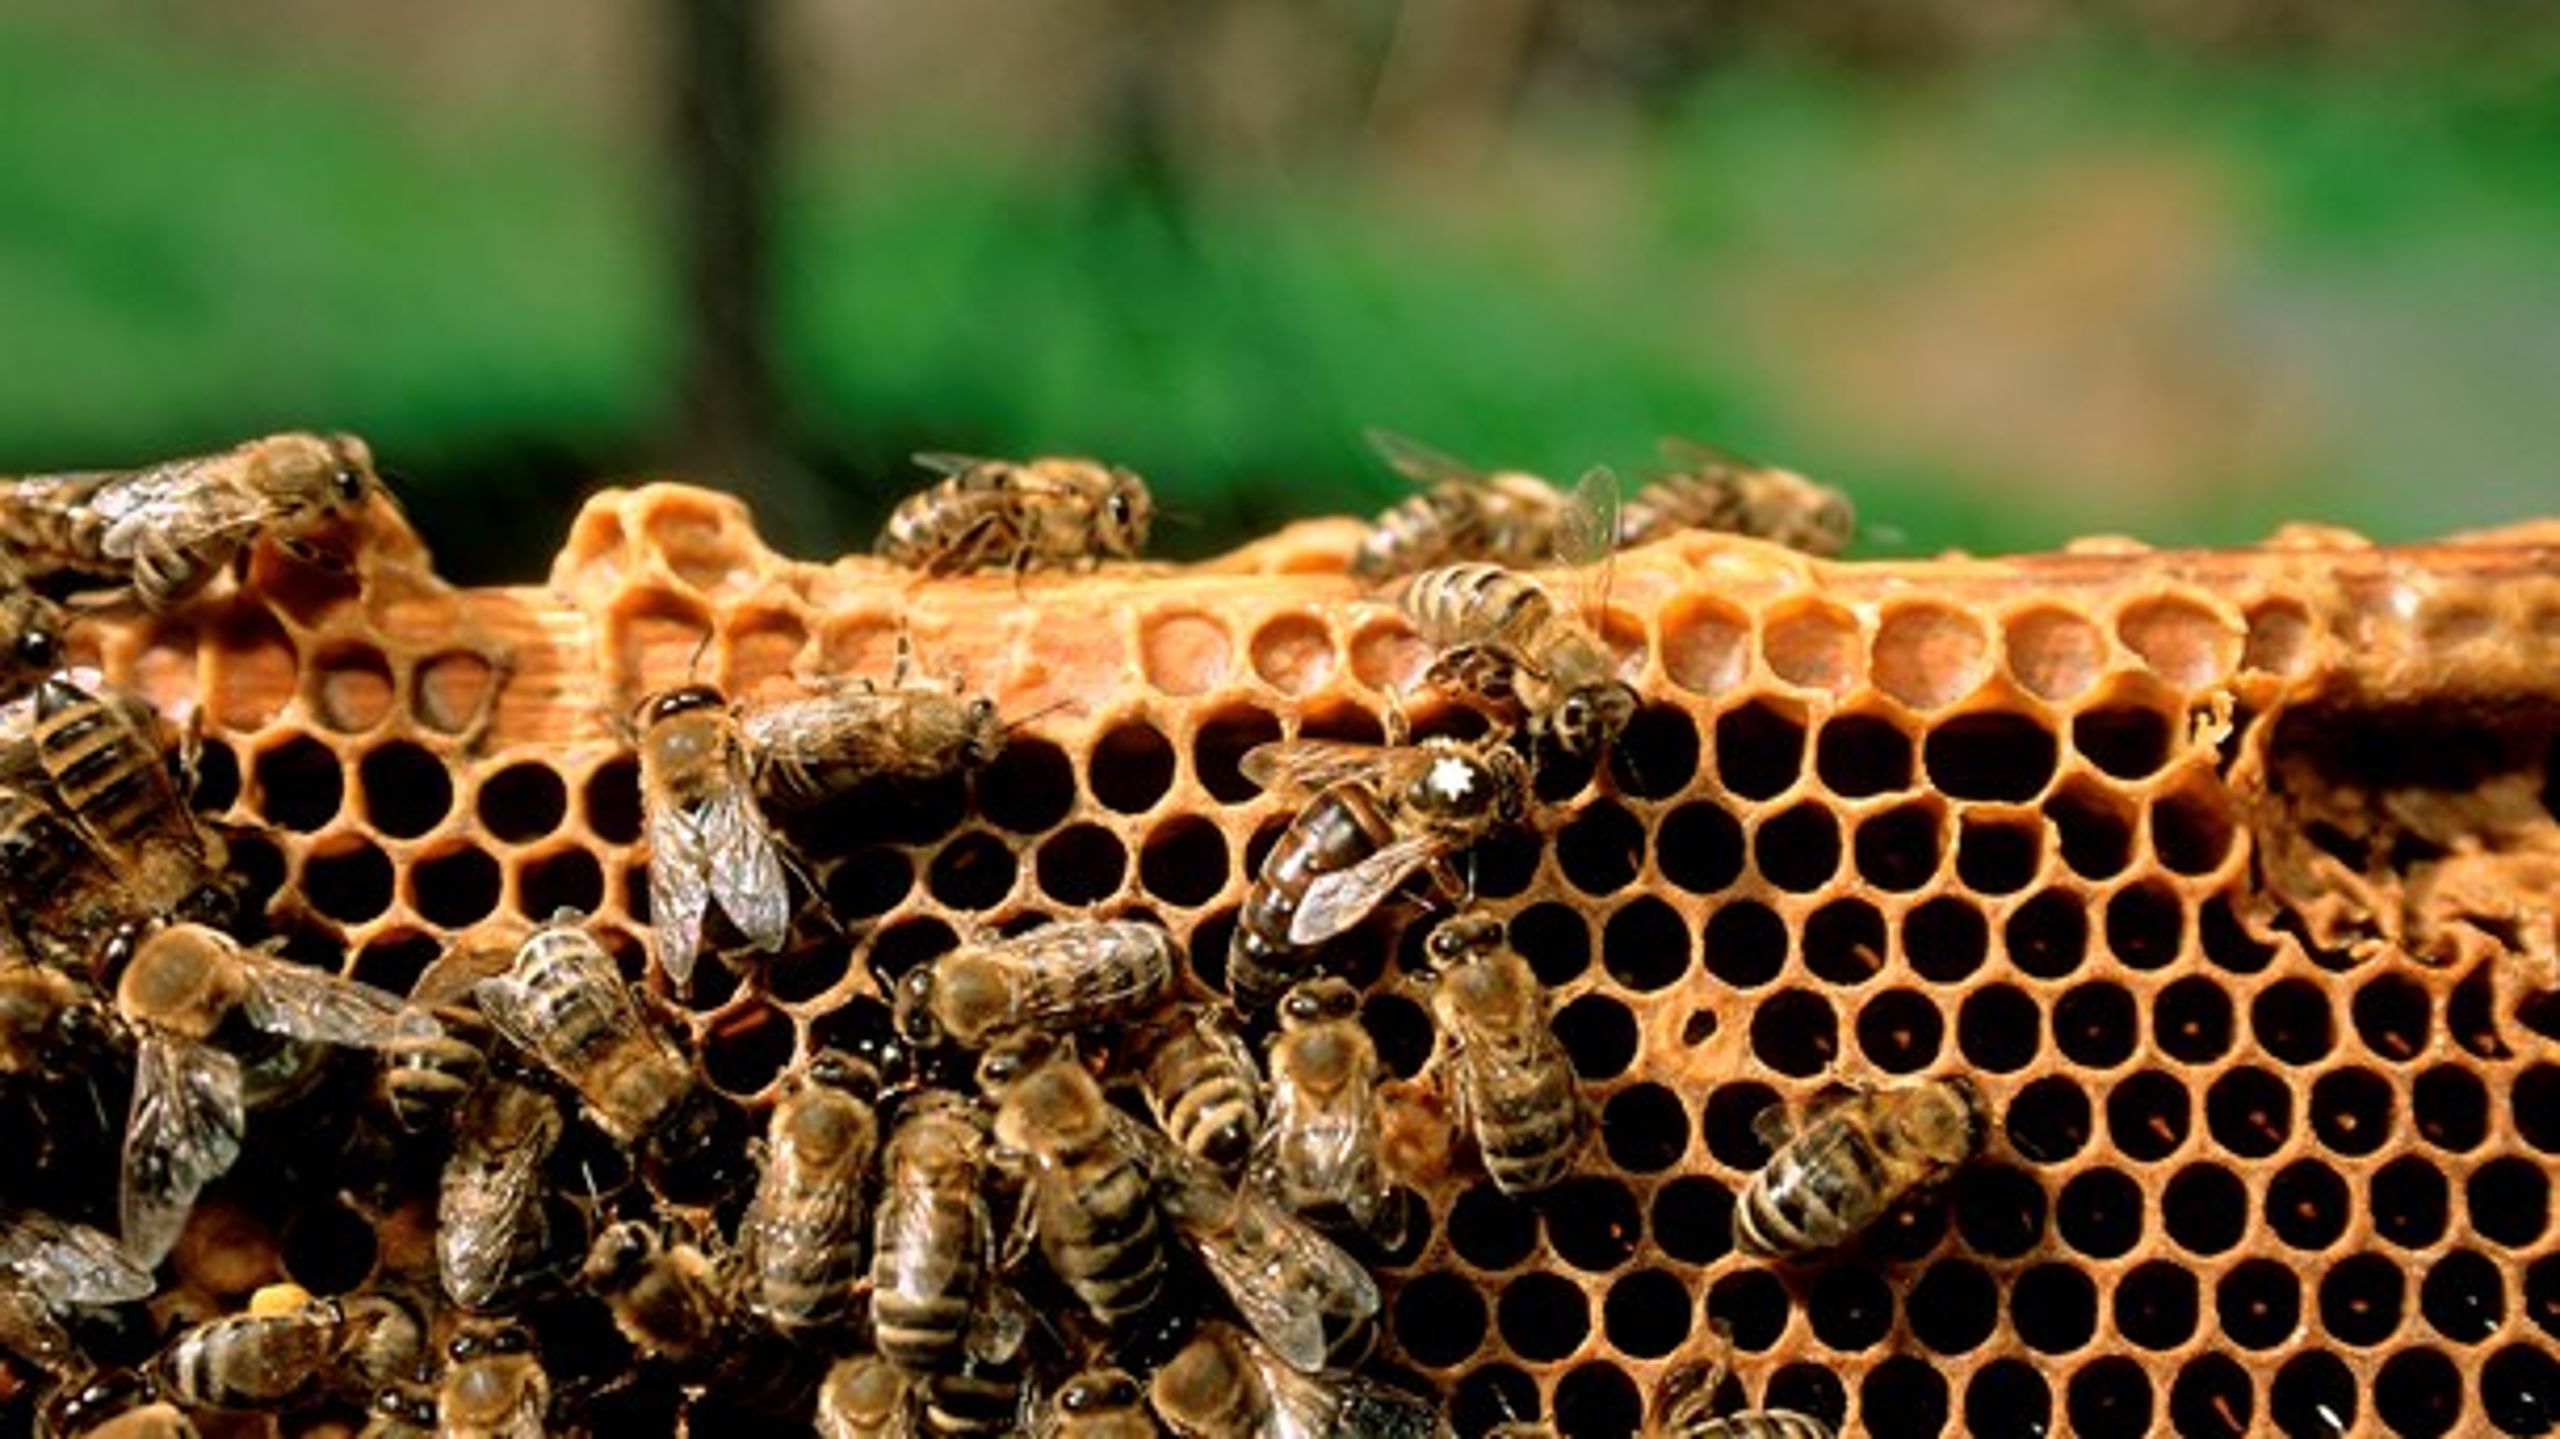 Honningbierne i landbruget udkonkurrerer de vilde bier, og det er derfor&nbsp;bemærkelsesværdigt, at miljø- og fødevareministeren sidste år tyvedoblede det areal, som honningbierne må slippes løs på, skriver&nbsp;Bo Øksnebjerg.